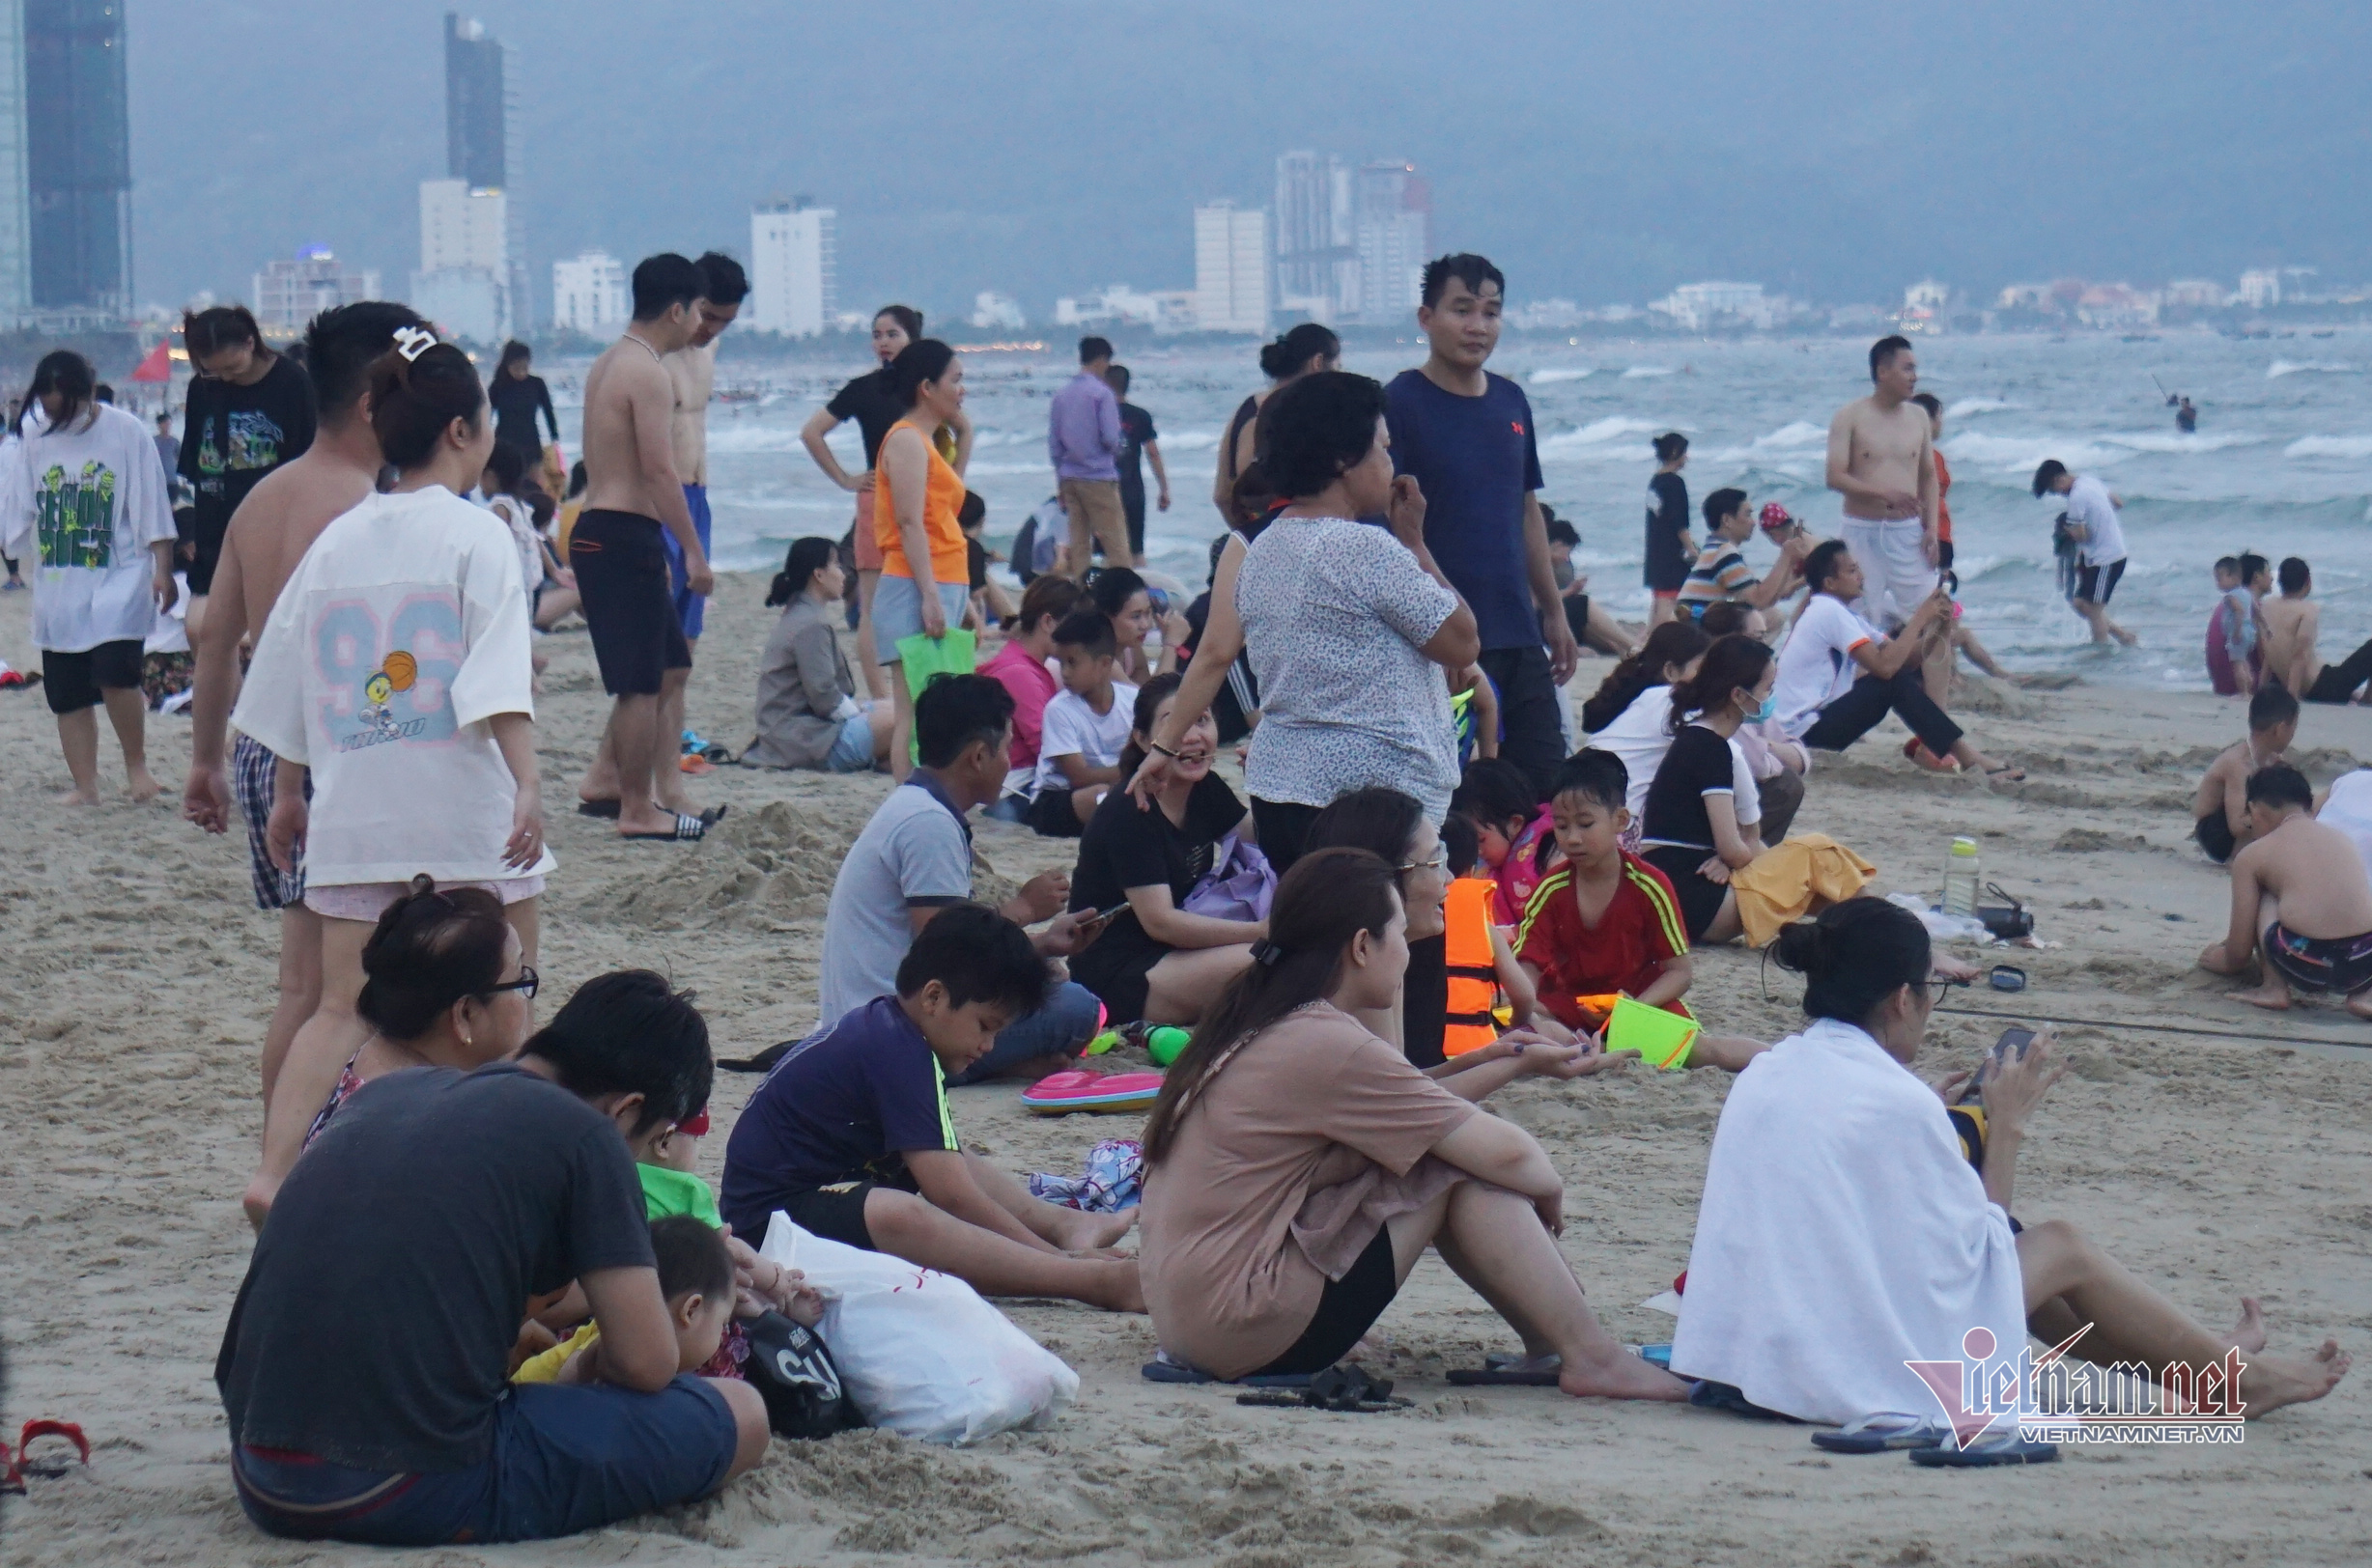 Bãi biển ở Đà Nẵng đông nghịt du khách ngày cuối tuần